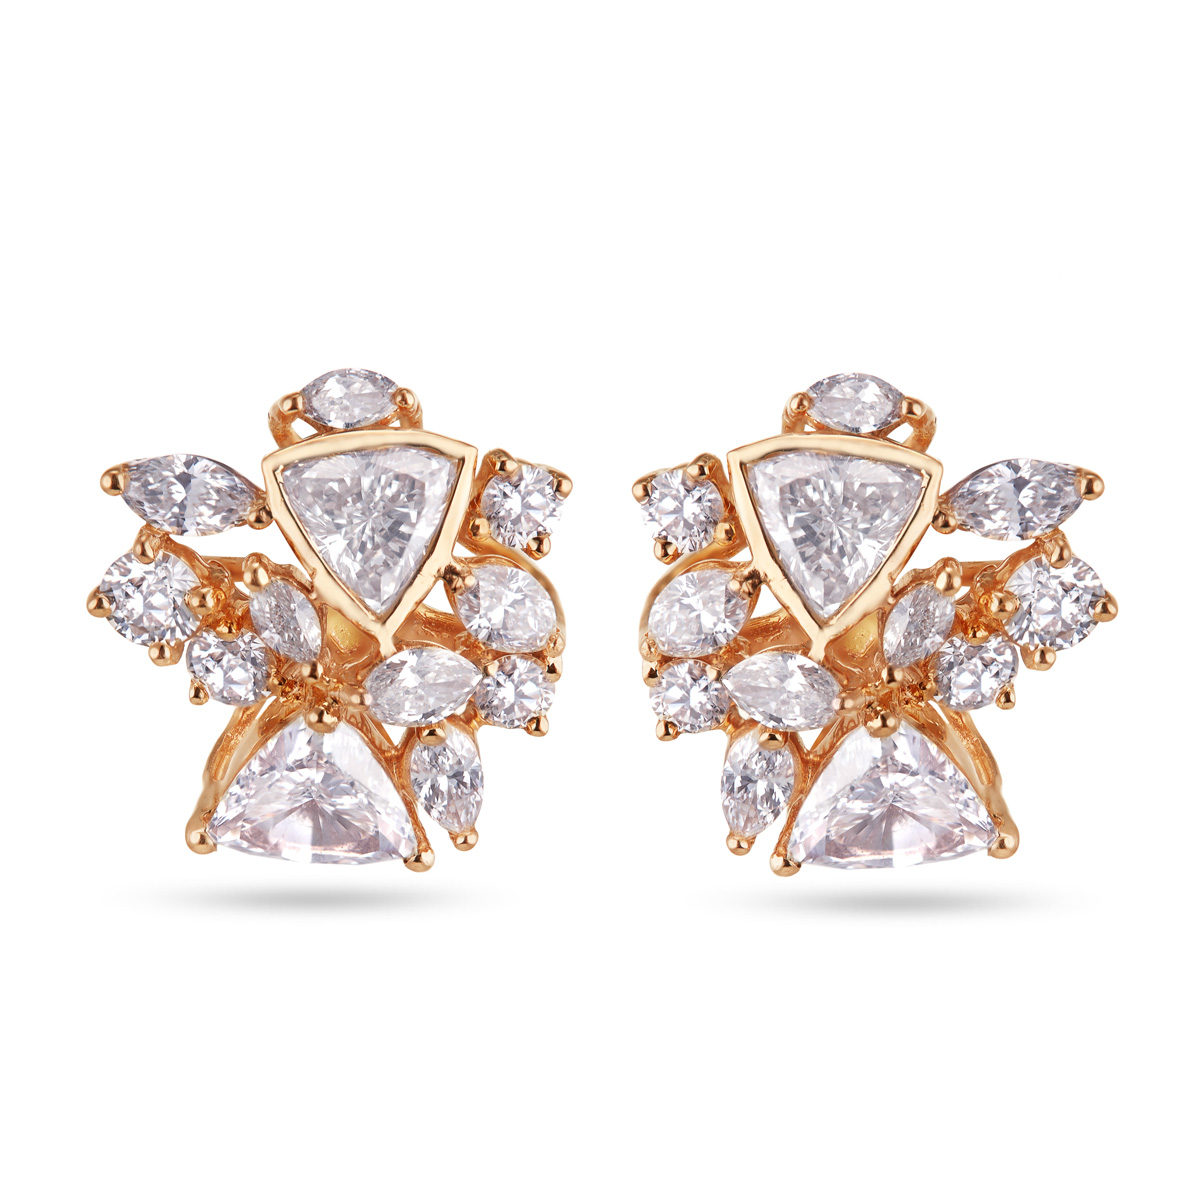 Fancy Cut Diamond Earrings